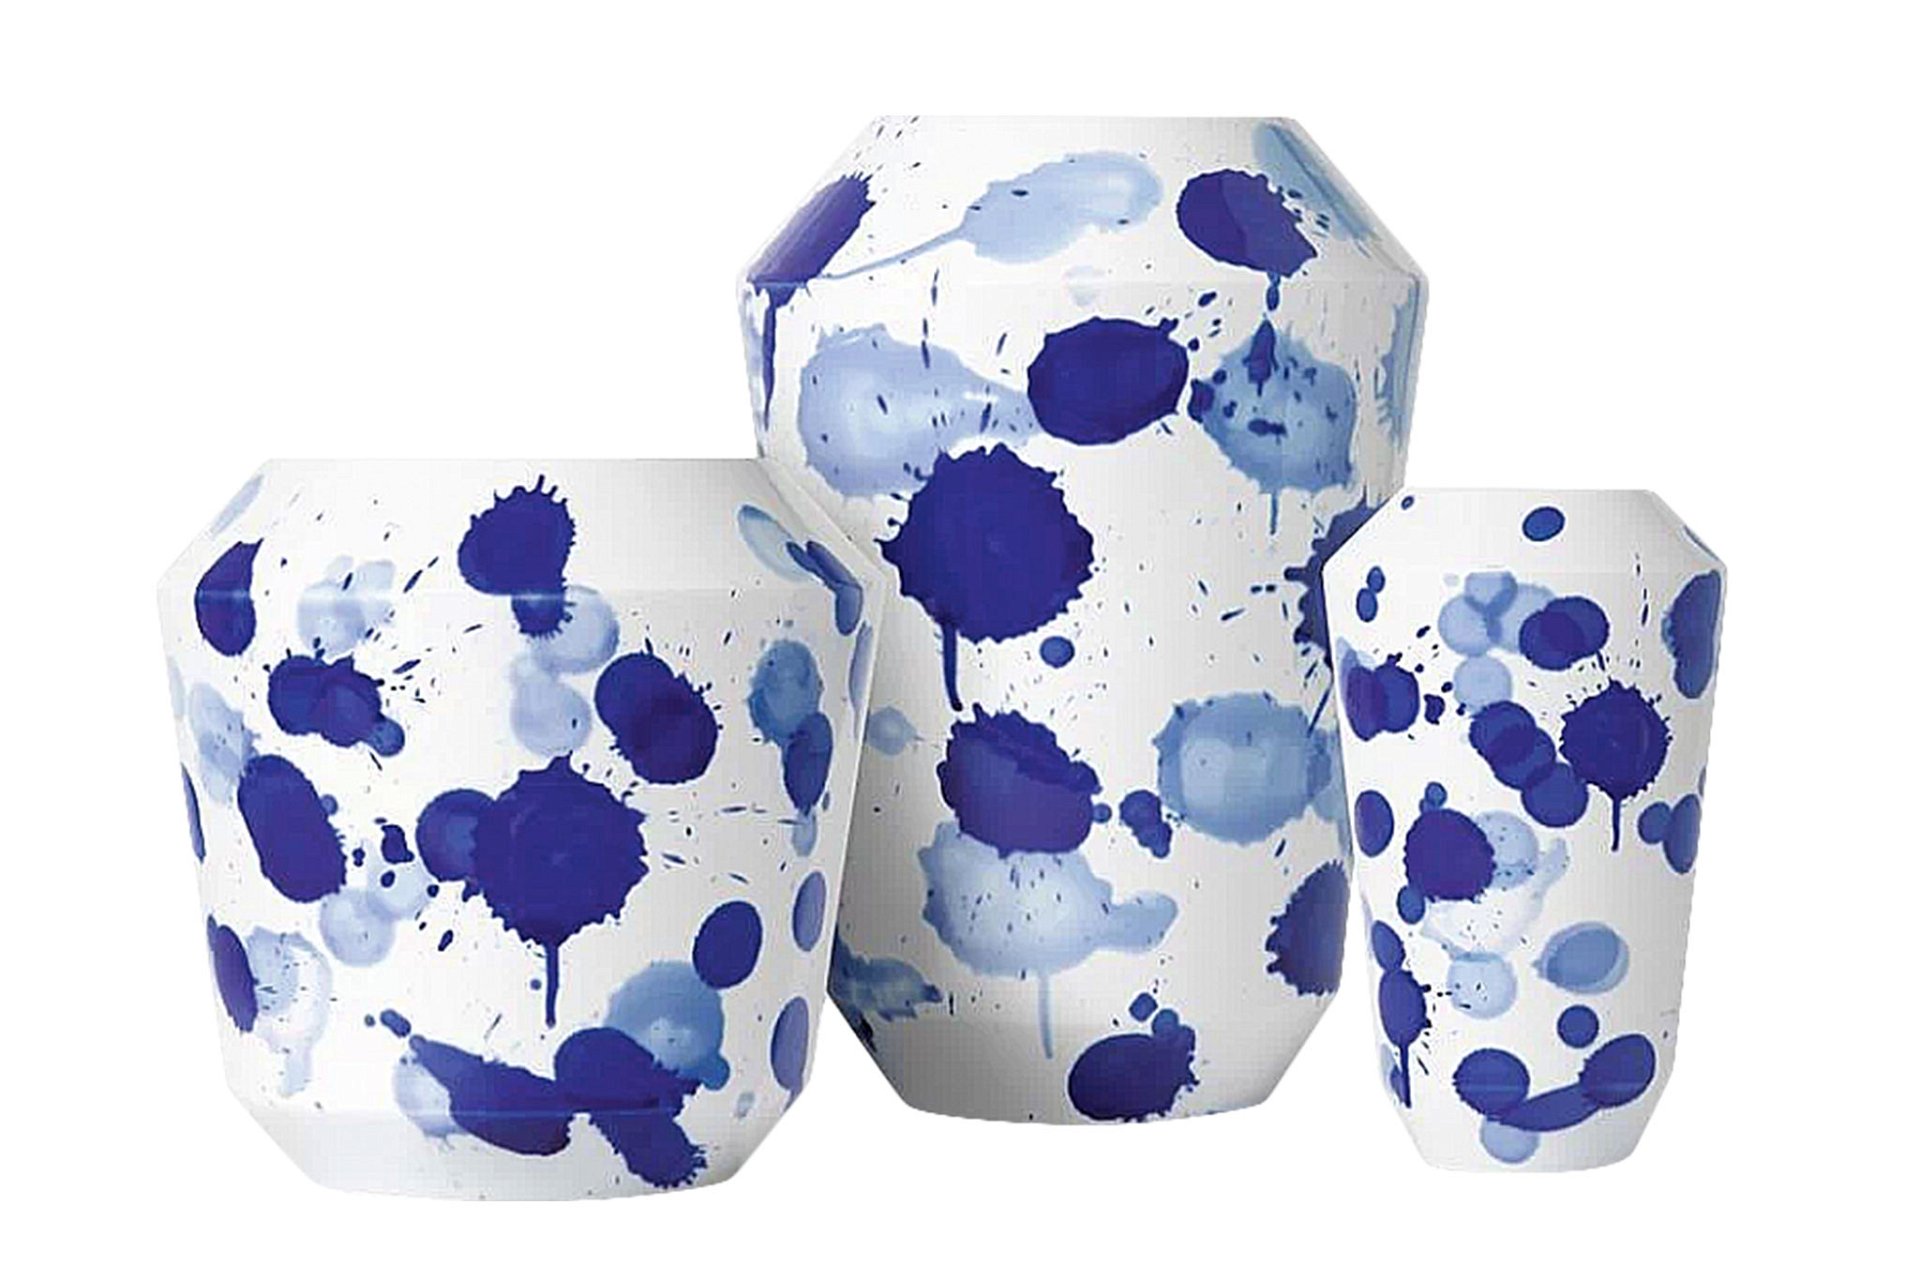 Die Vasen »Drops« von Sieger by Fürstenberg von Hand gearbeitete eindrucksvolle Deko-Objekte aus Porzellan mit Kobaltzeichnungen. artedona.com